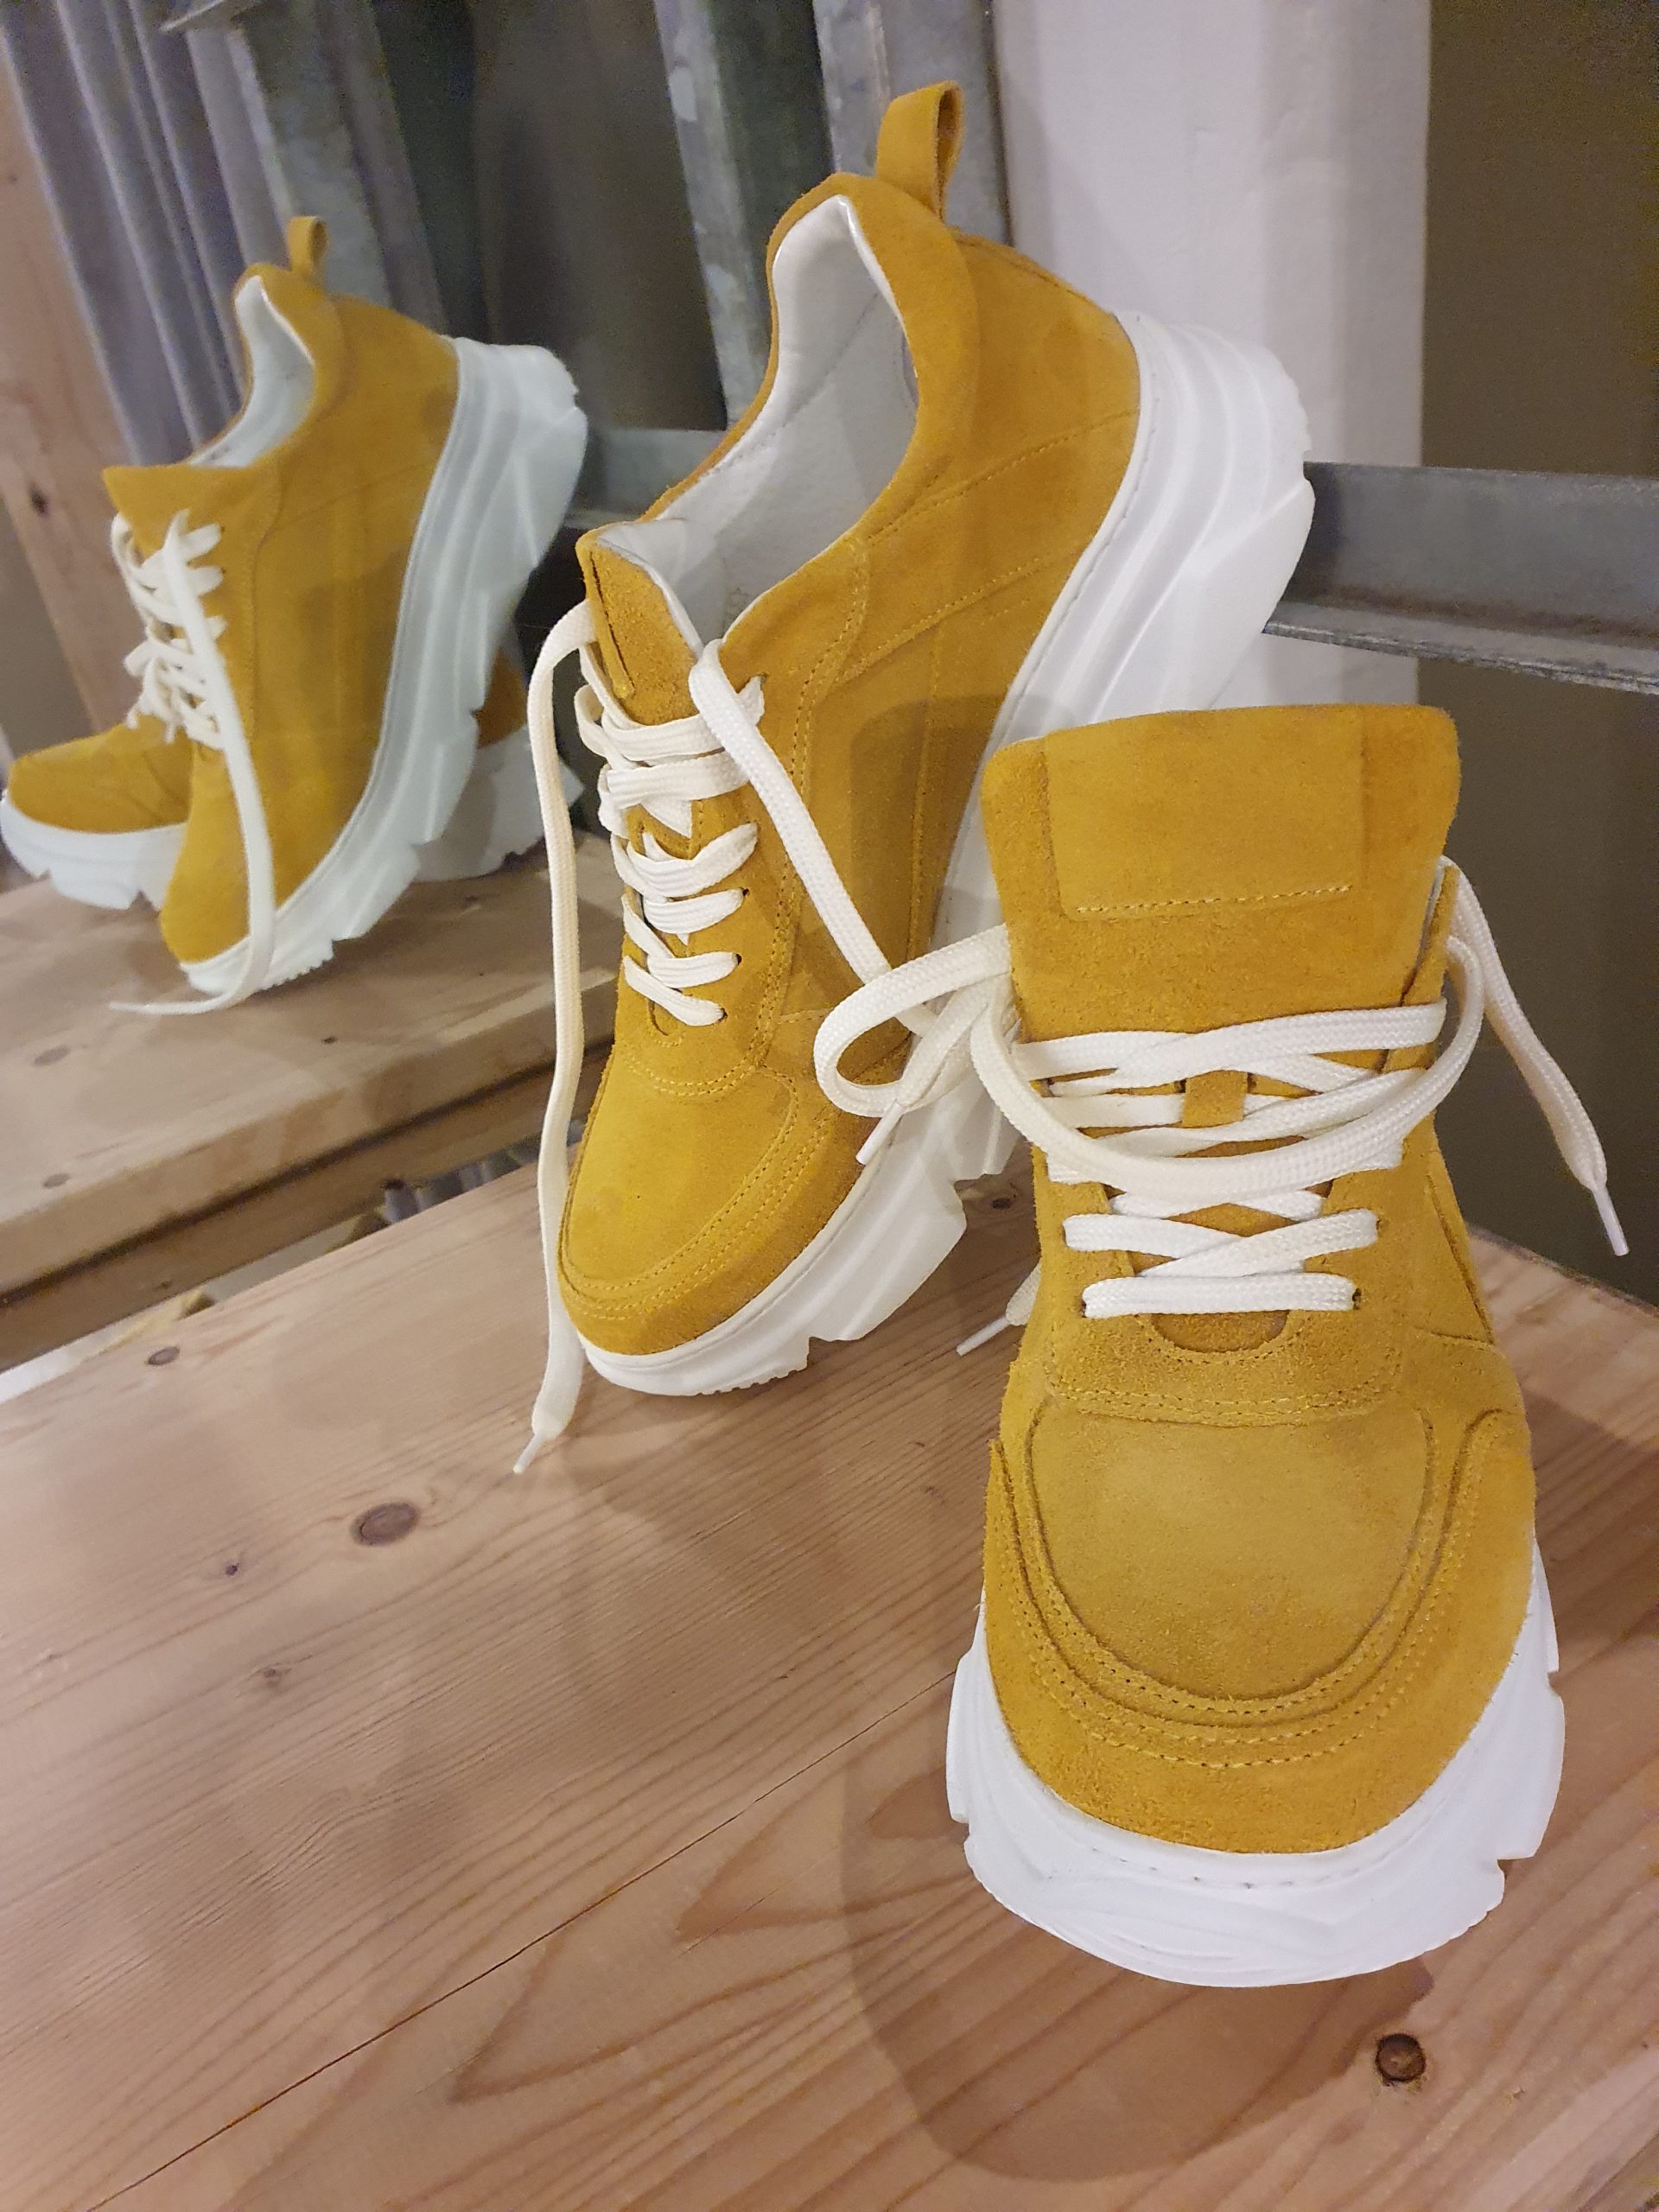 Zuidelijk Voorwaarde Belachelijk gele sneakers – Gewoon Mooi Leeuwarden